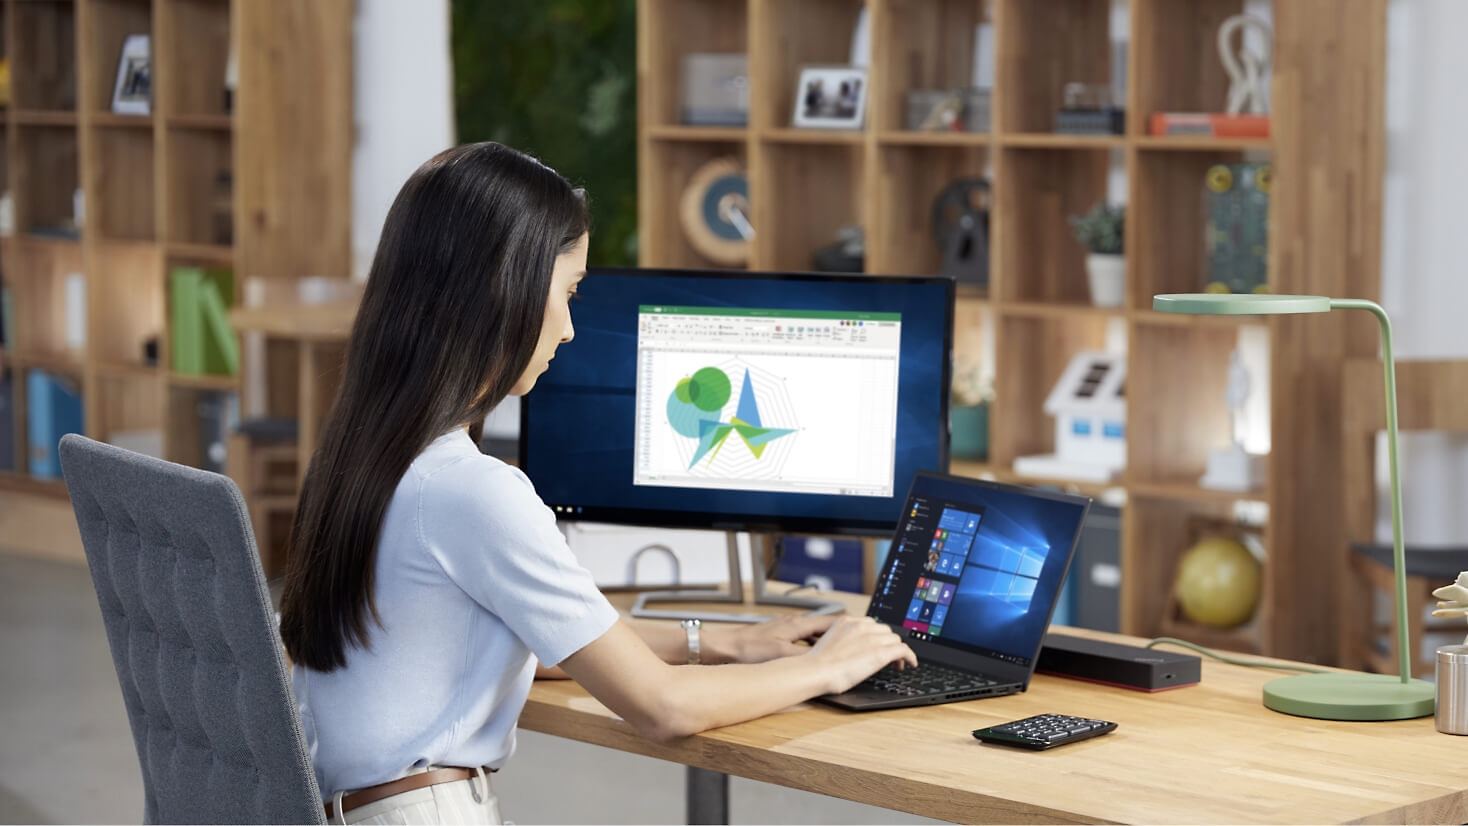 Uma pessoa trabalhando na mesa com um notebook e um monitor de desktop.